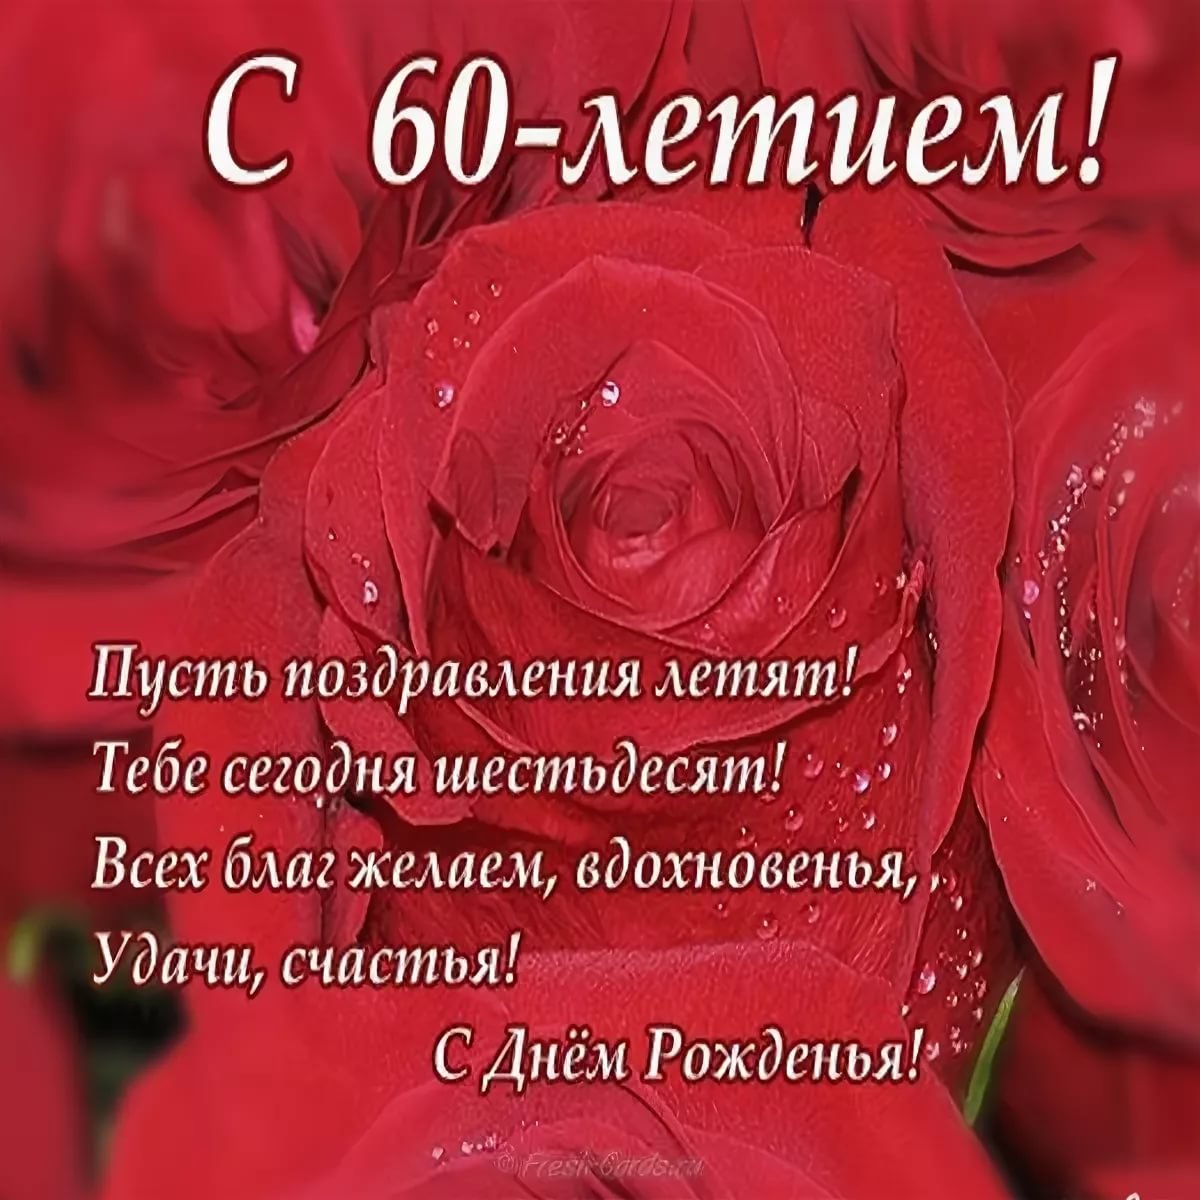 Поздравления с днем рождения на татарском языке